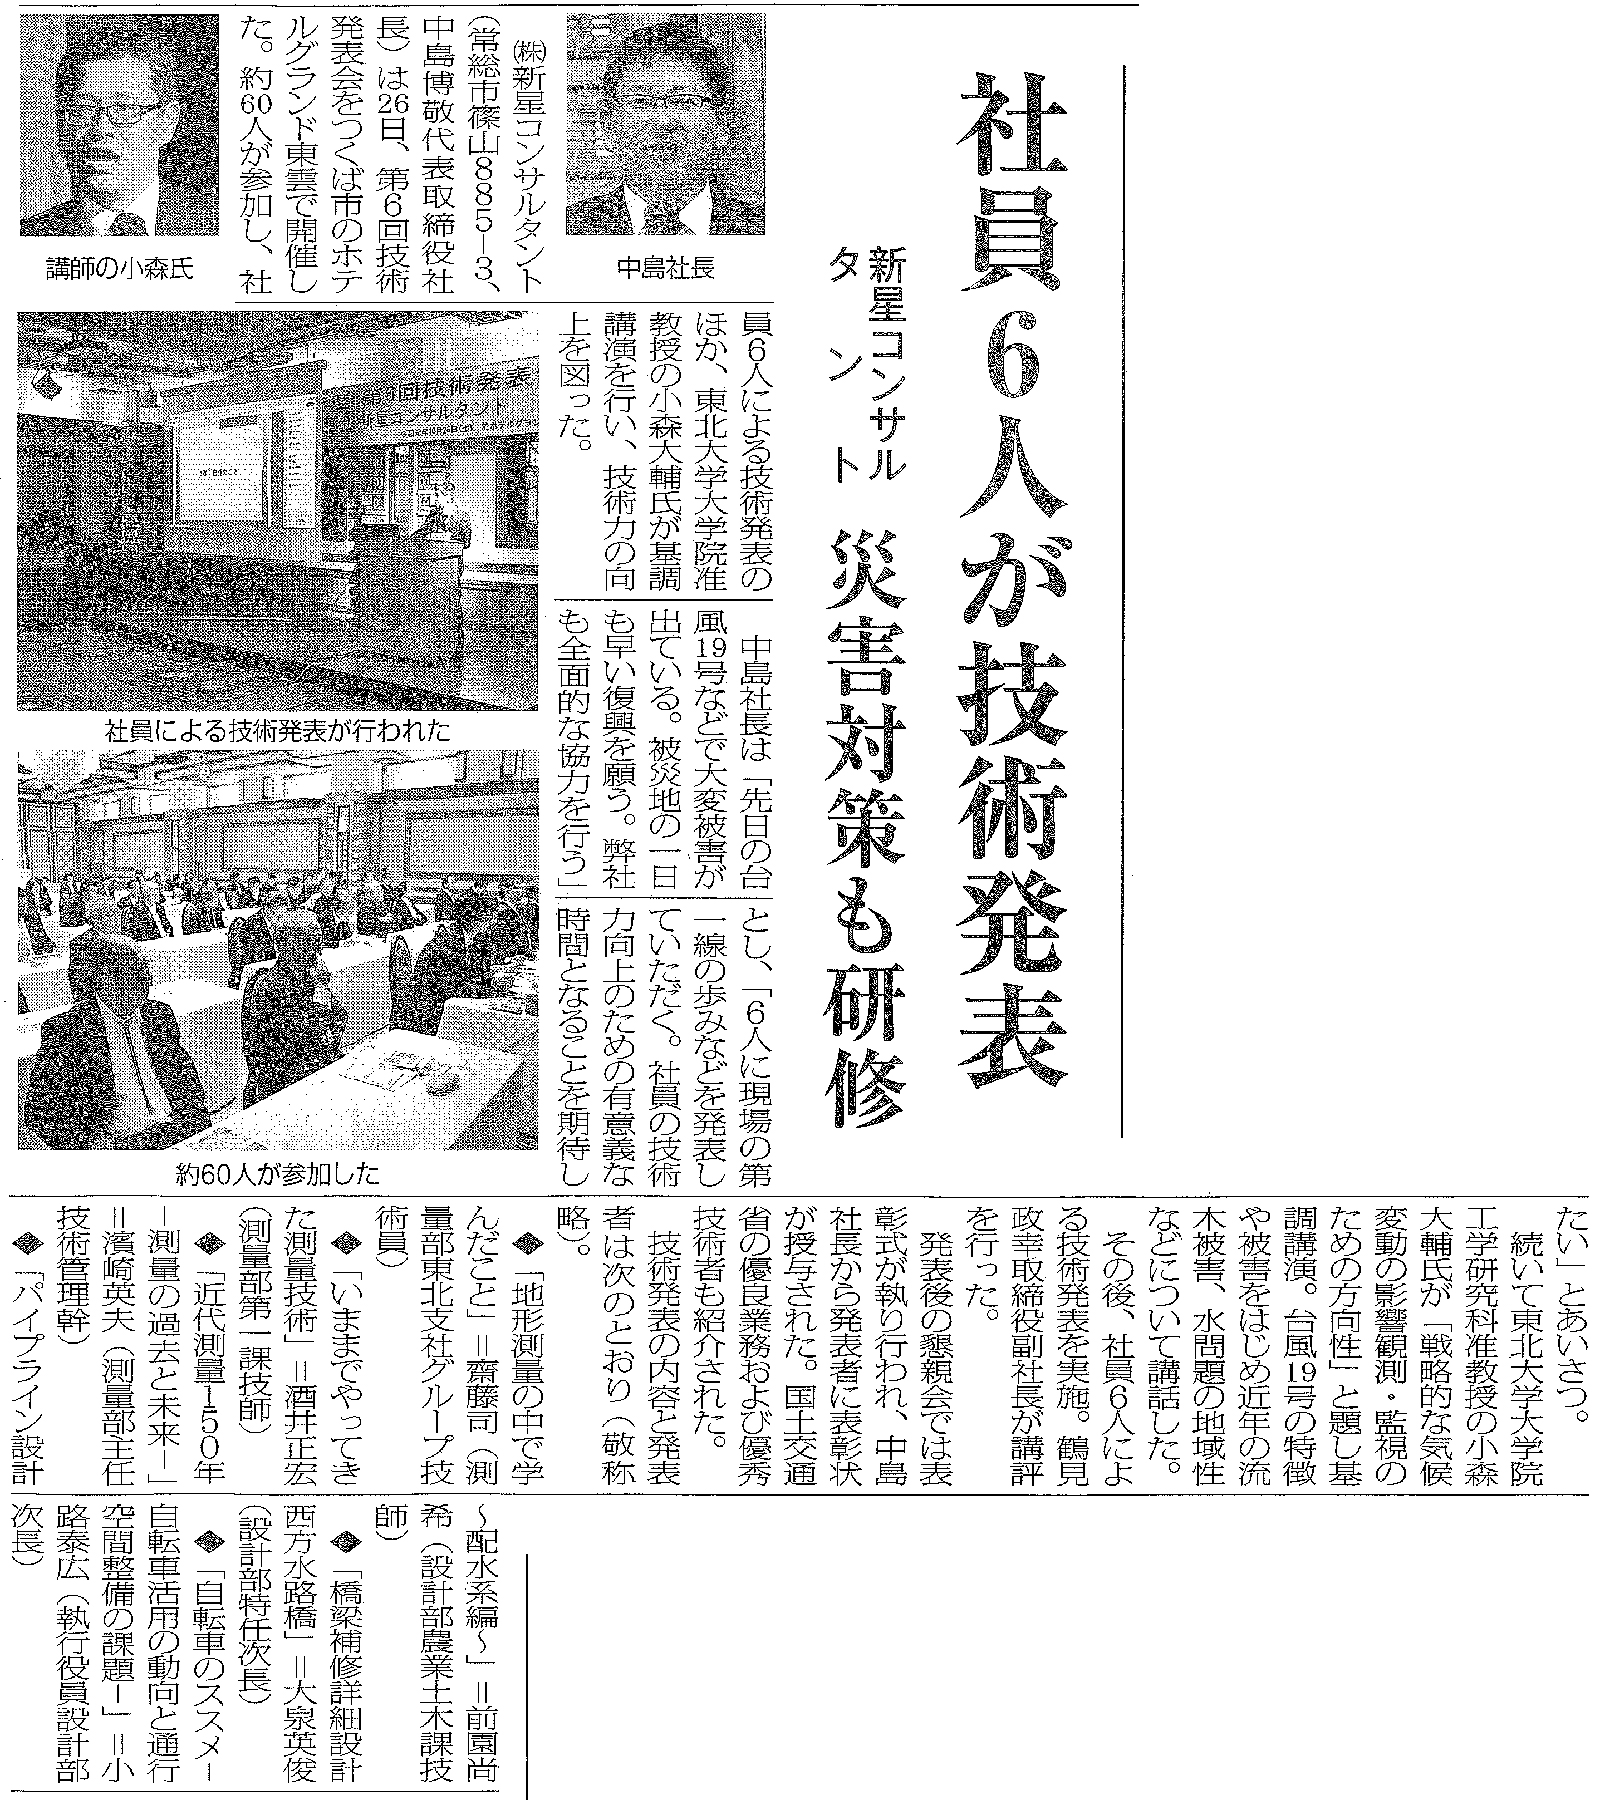 また、今回の技術発表会についての記事が10月30日の日本工業経済新聞に掲載されました。